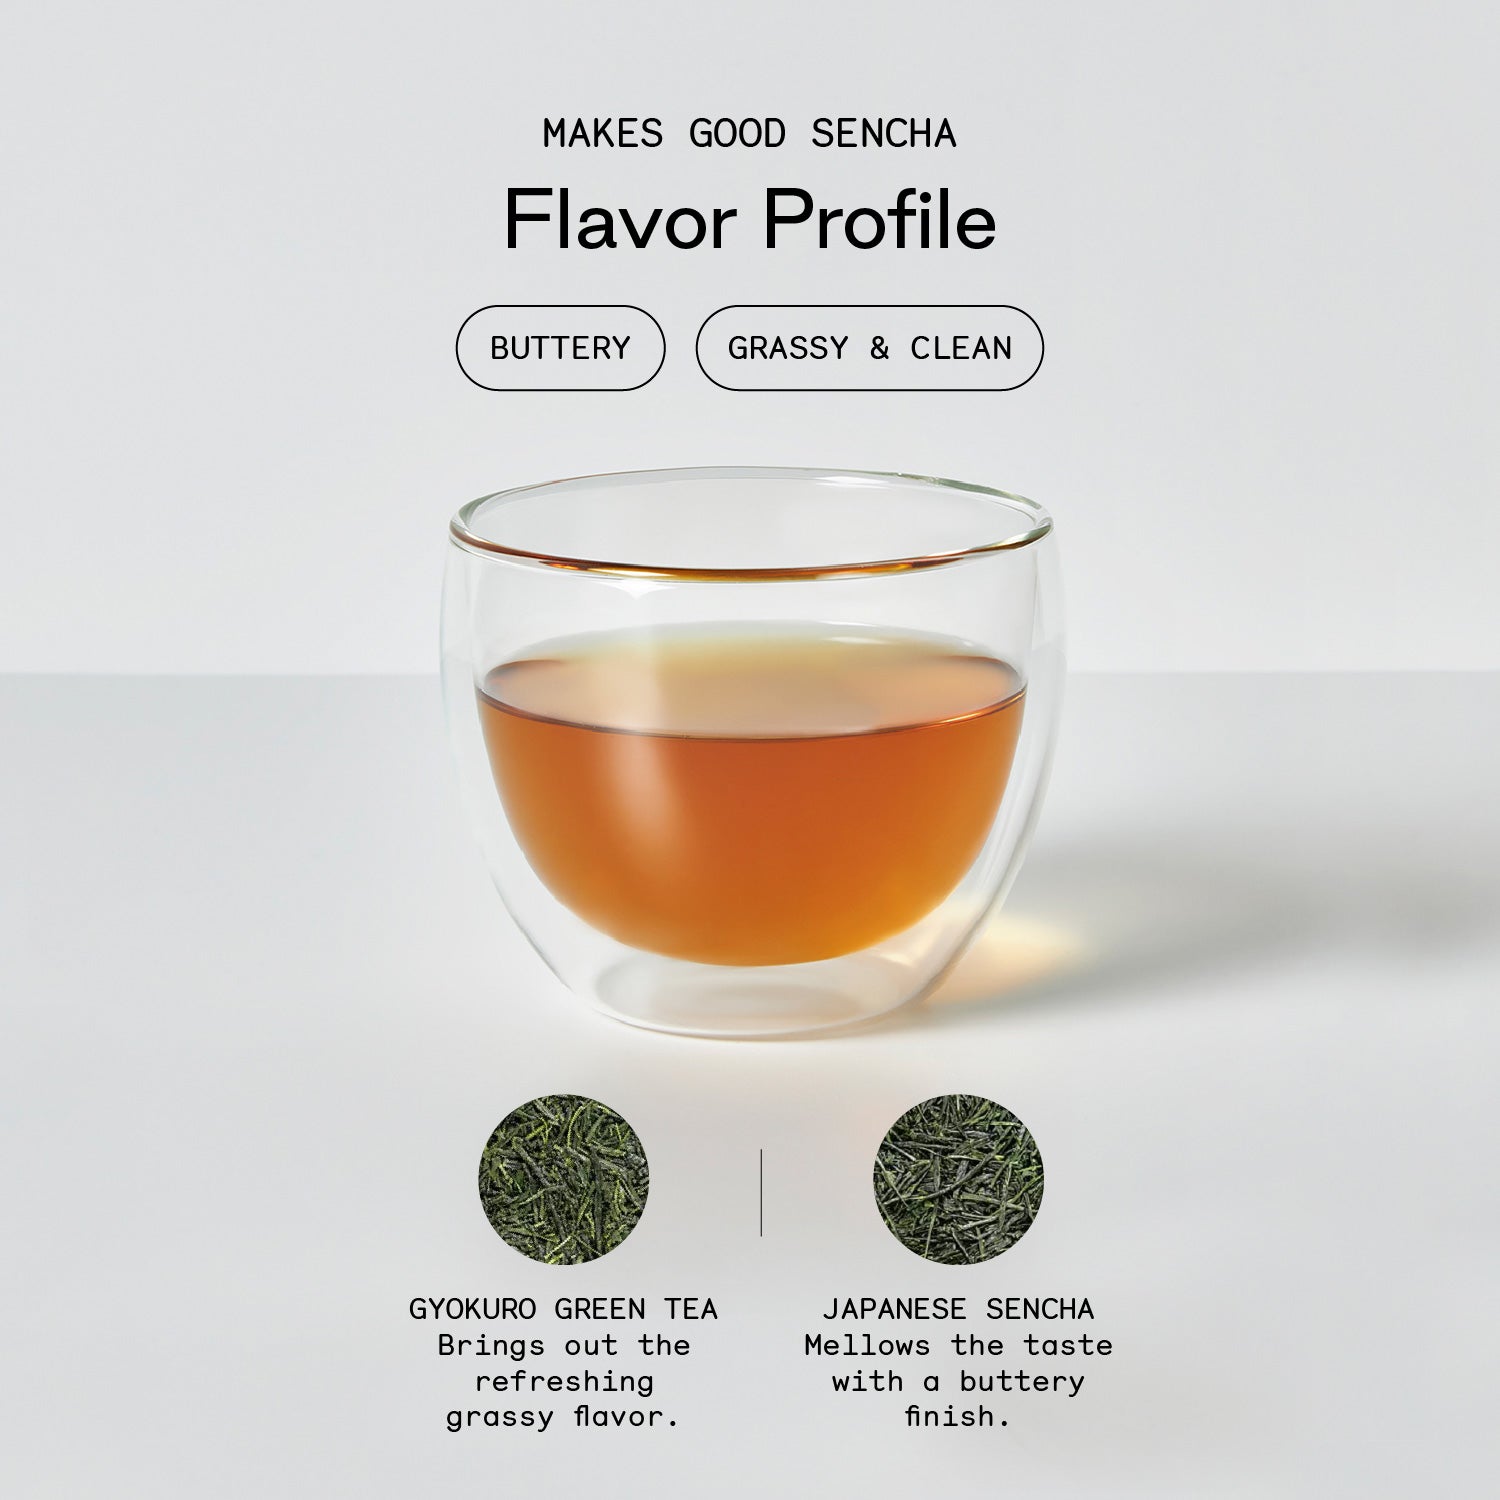 Kick the Cough Promo Bundle - Firebelly Tea